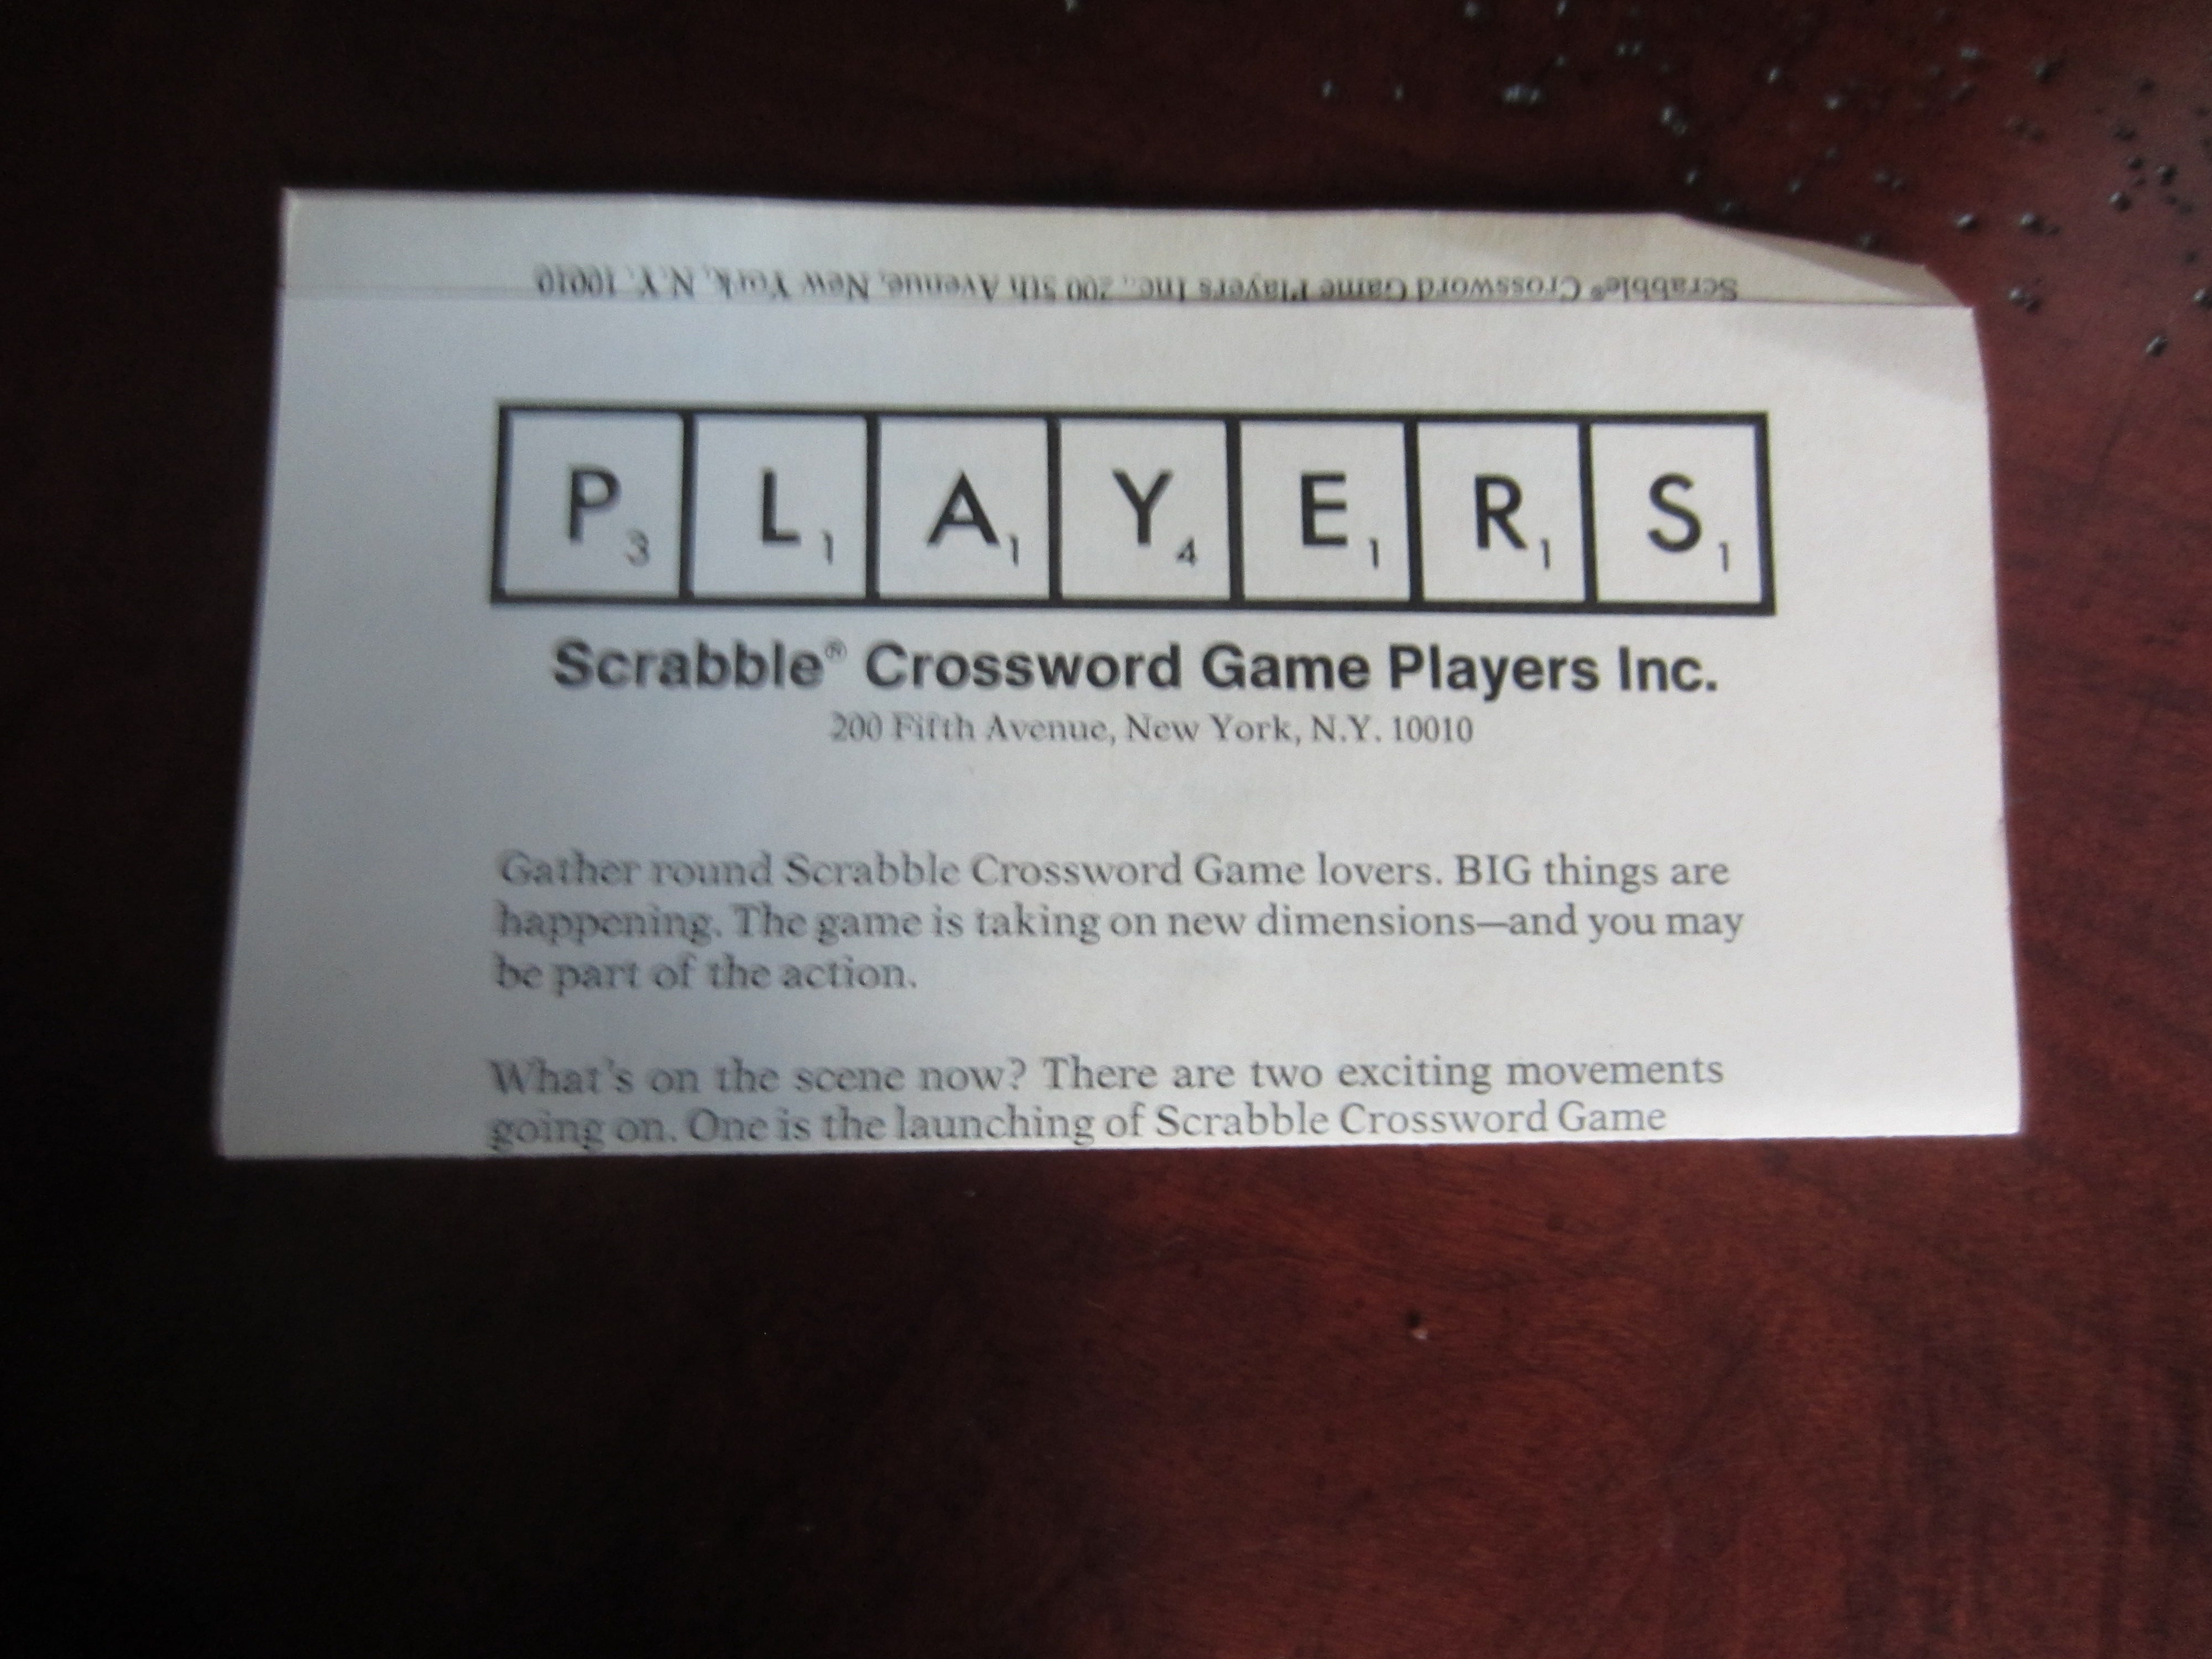 Scrabble Sentence Cubes Vintage Game